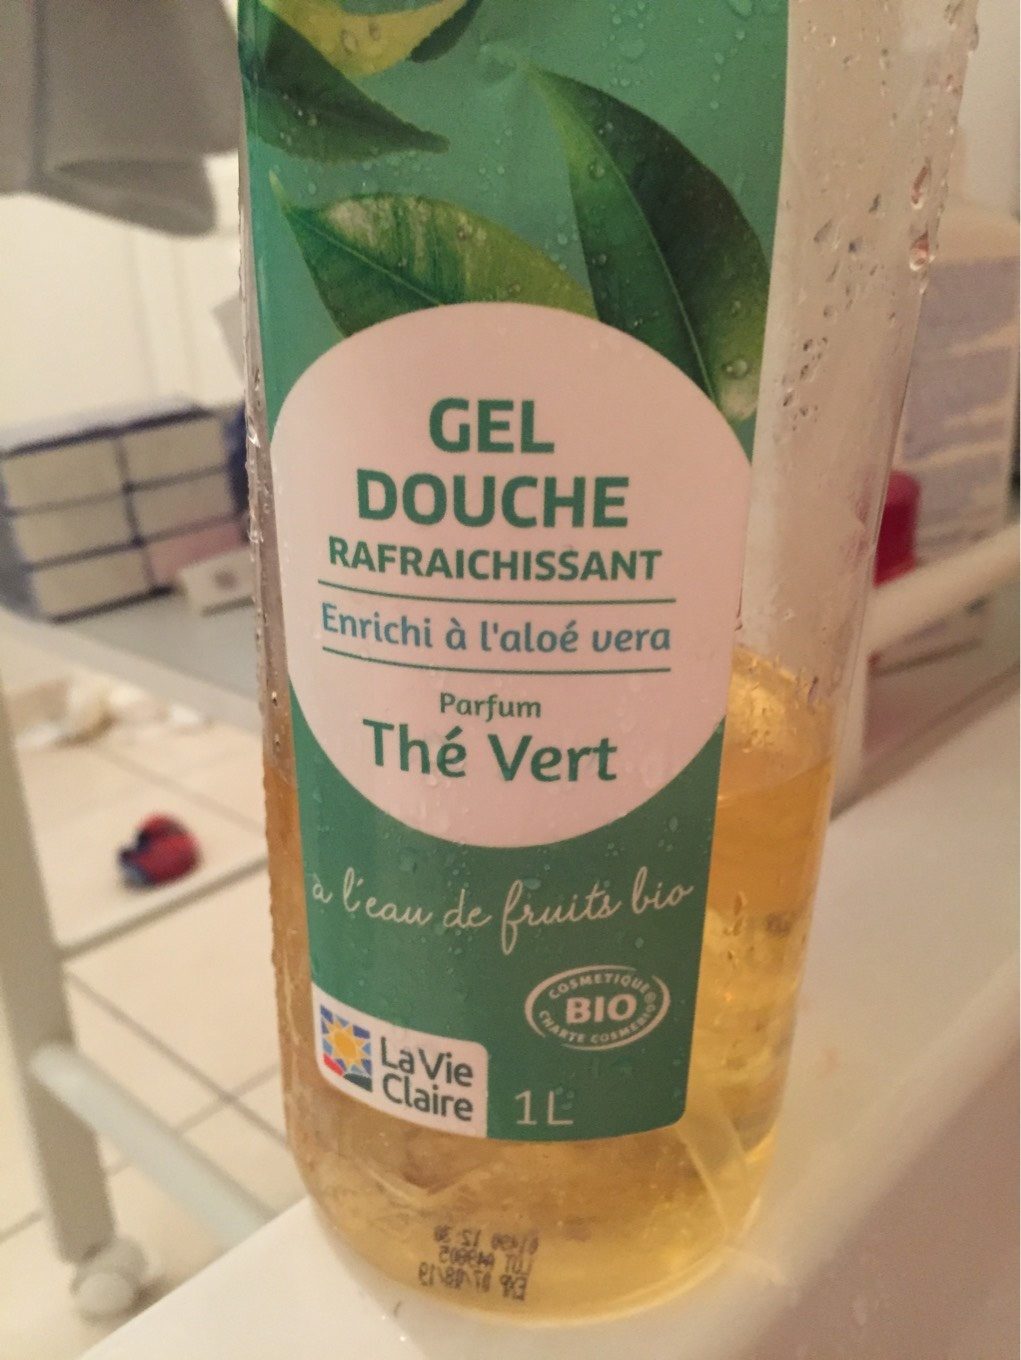 Gel douche the vert - Tuote - fr